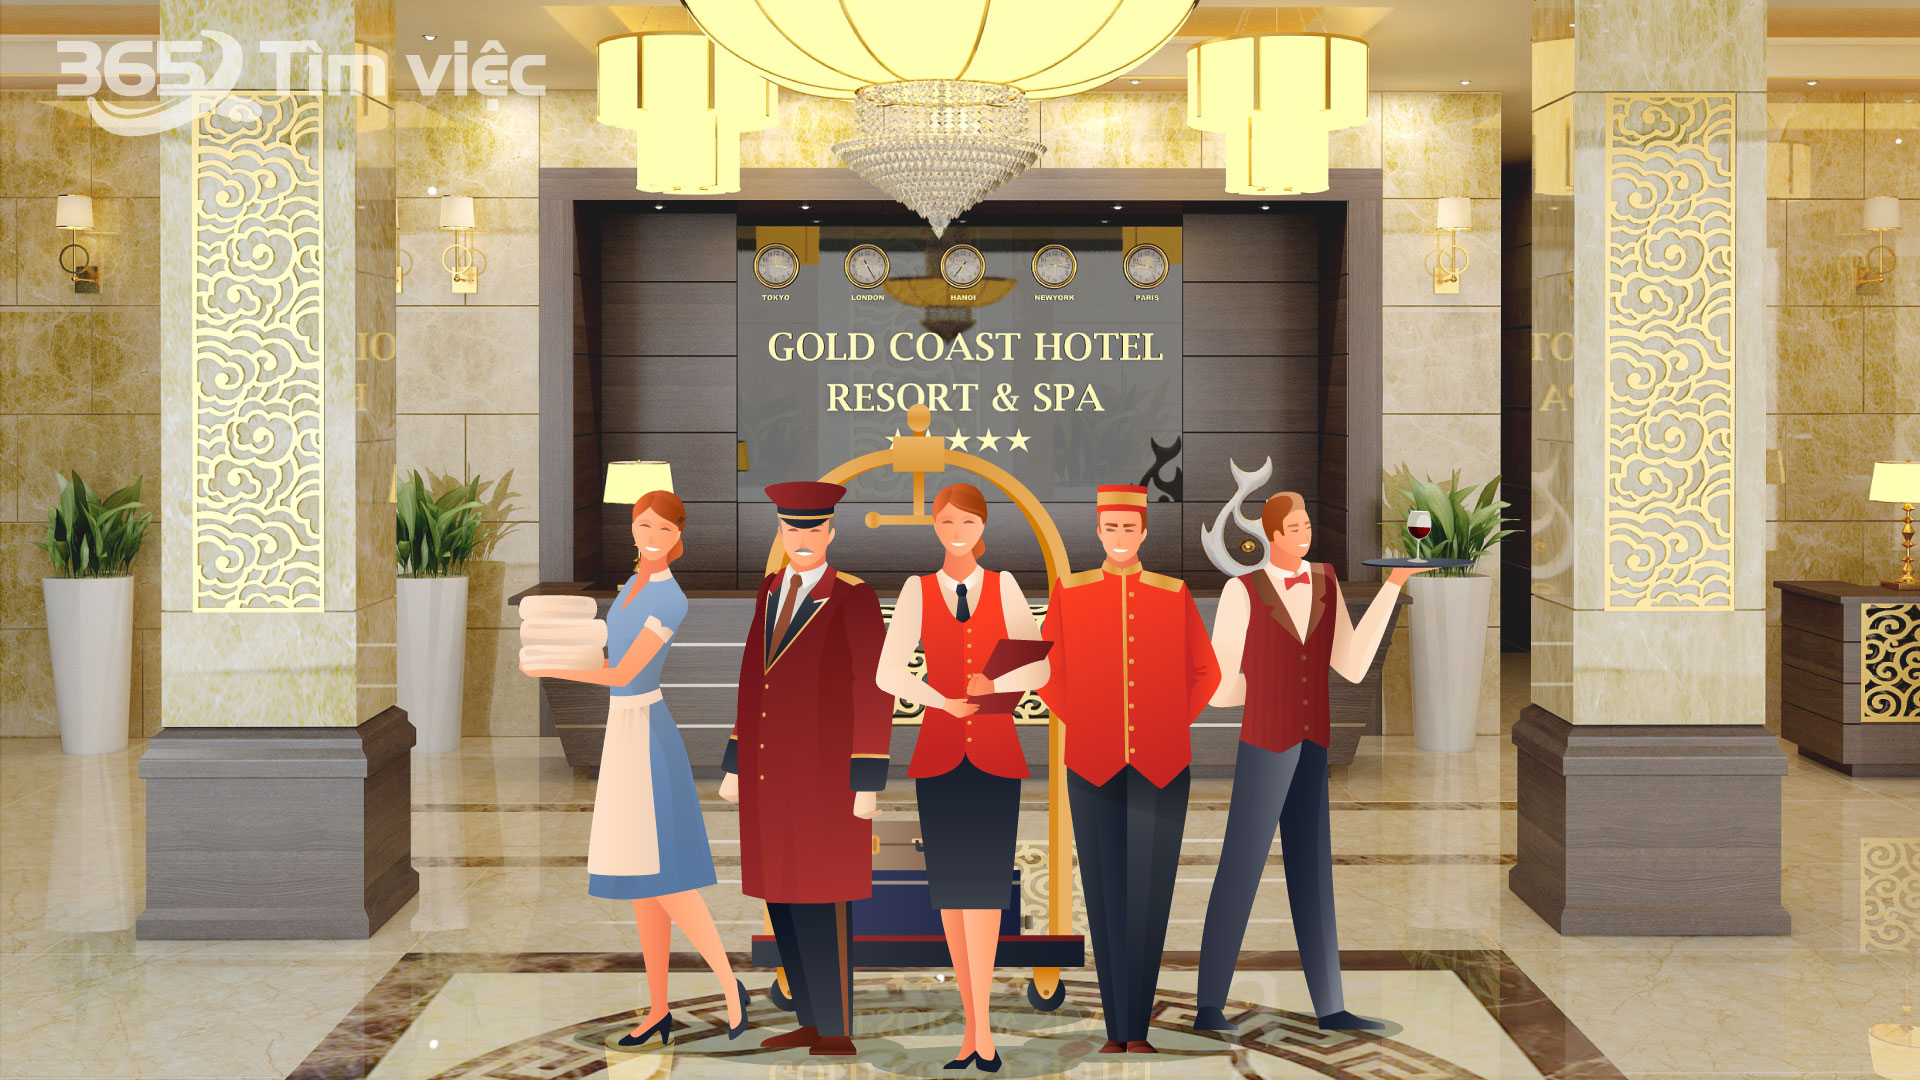 Quy trình dọn phòng khách sạn - Bật mí về thứ tự ưu tiên trong khách sạn khi dọn phòng